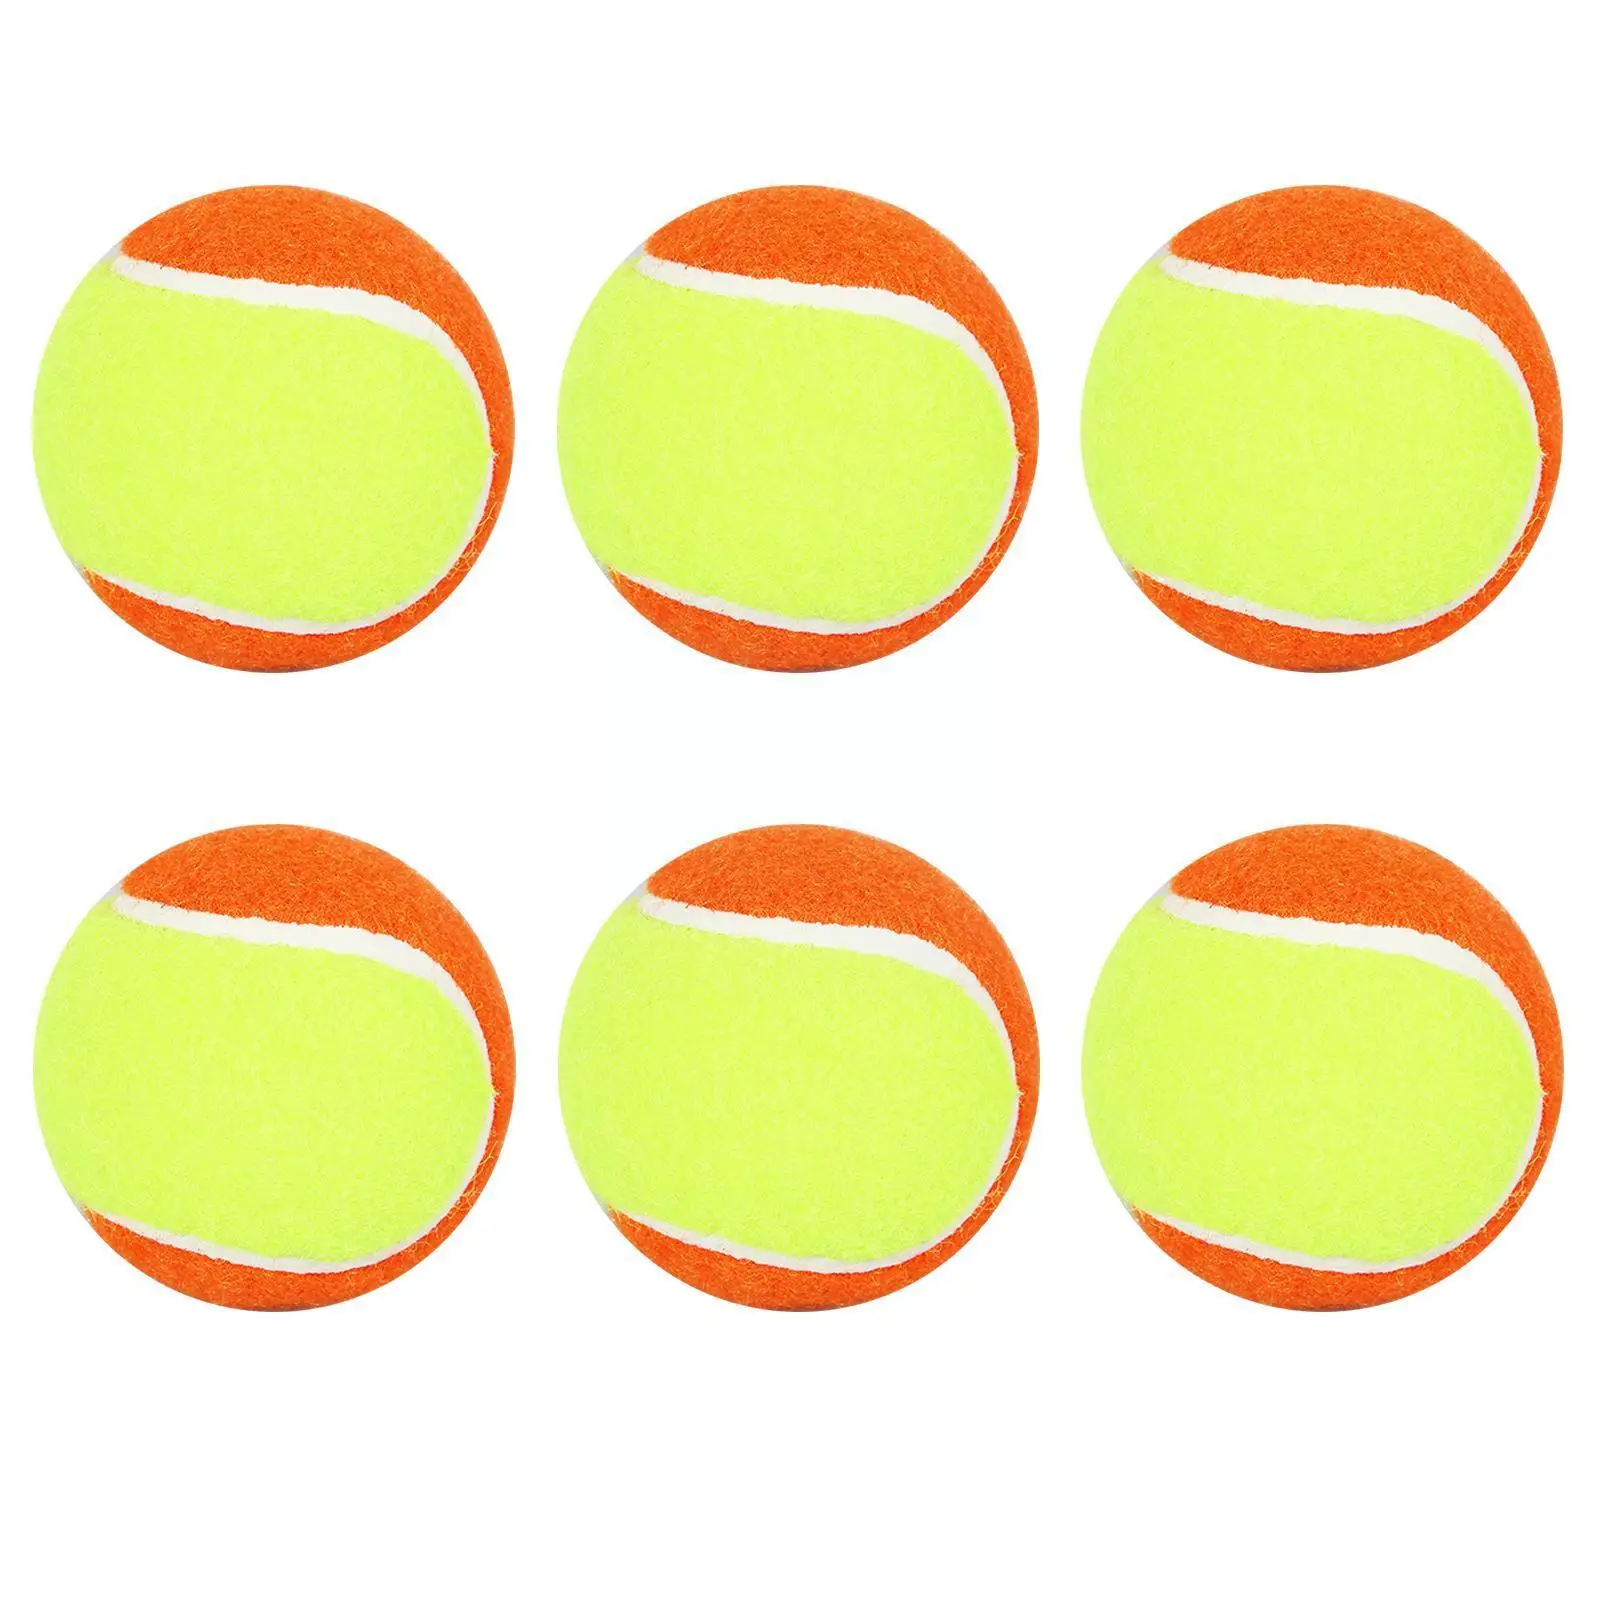 

Детский мягкий тренировочный мяч для пляжа, тенниса, резиновый материал, Спортивная игрушка для тенниса, цвет желтый, L7a0